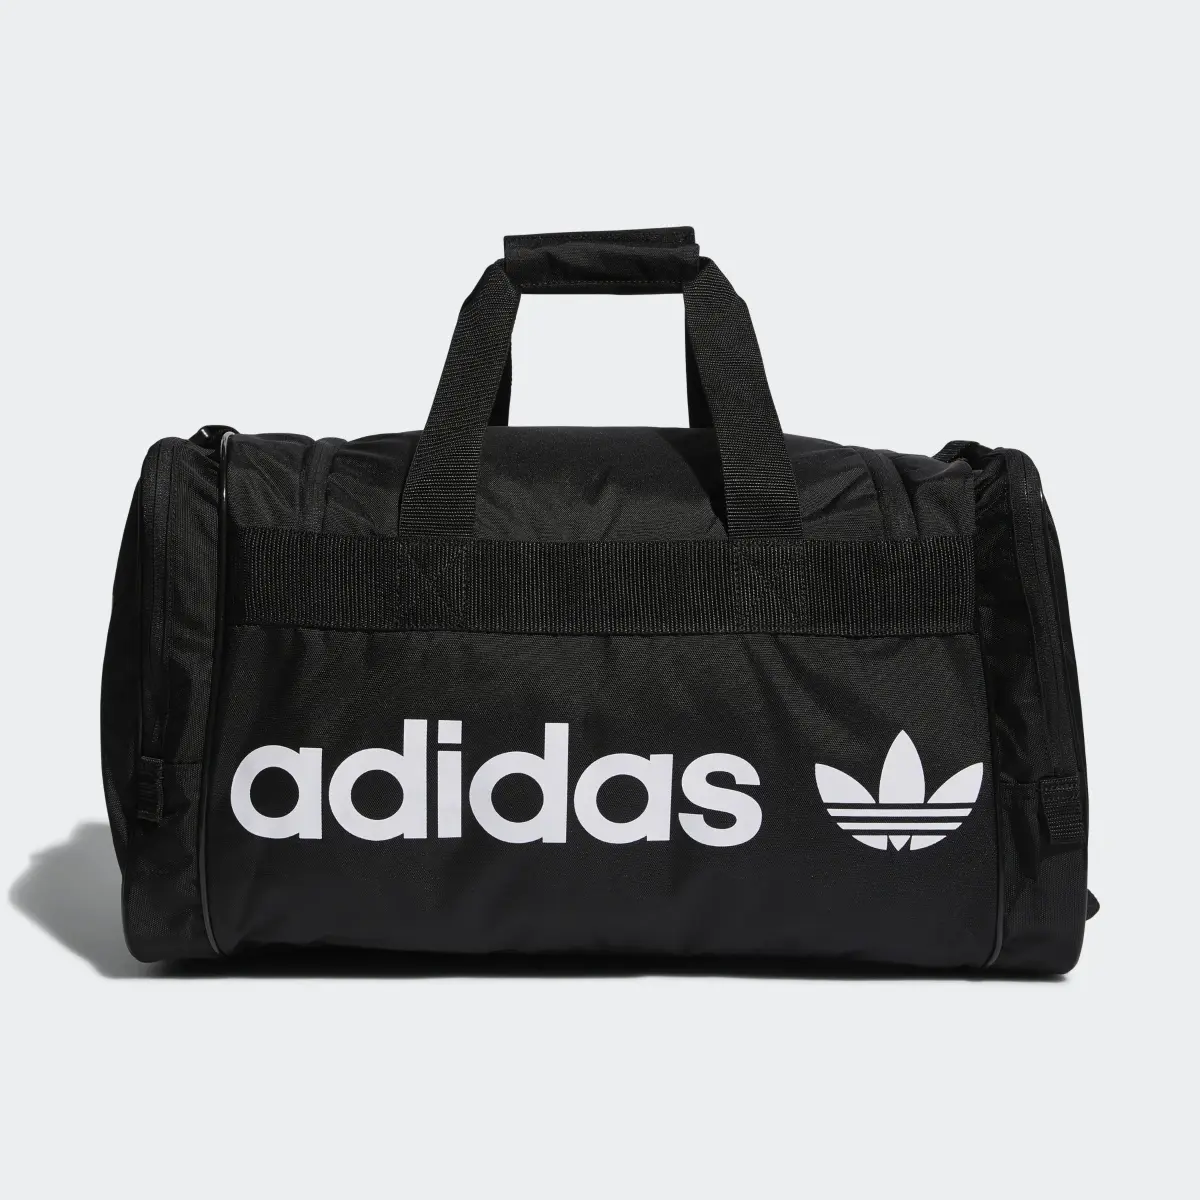 Adidas Santiago Duffel Bag. 3